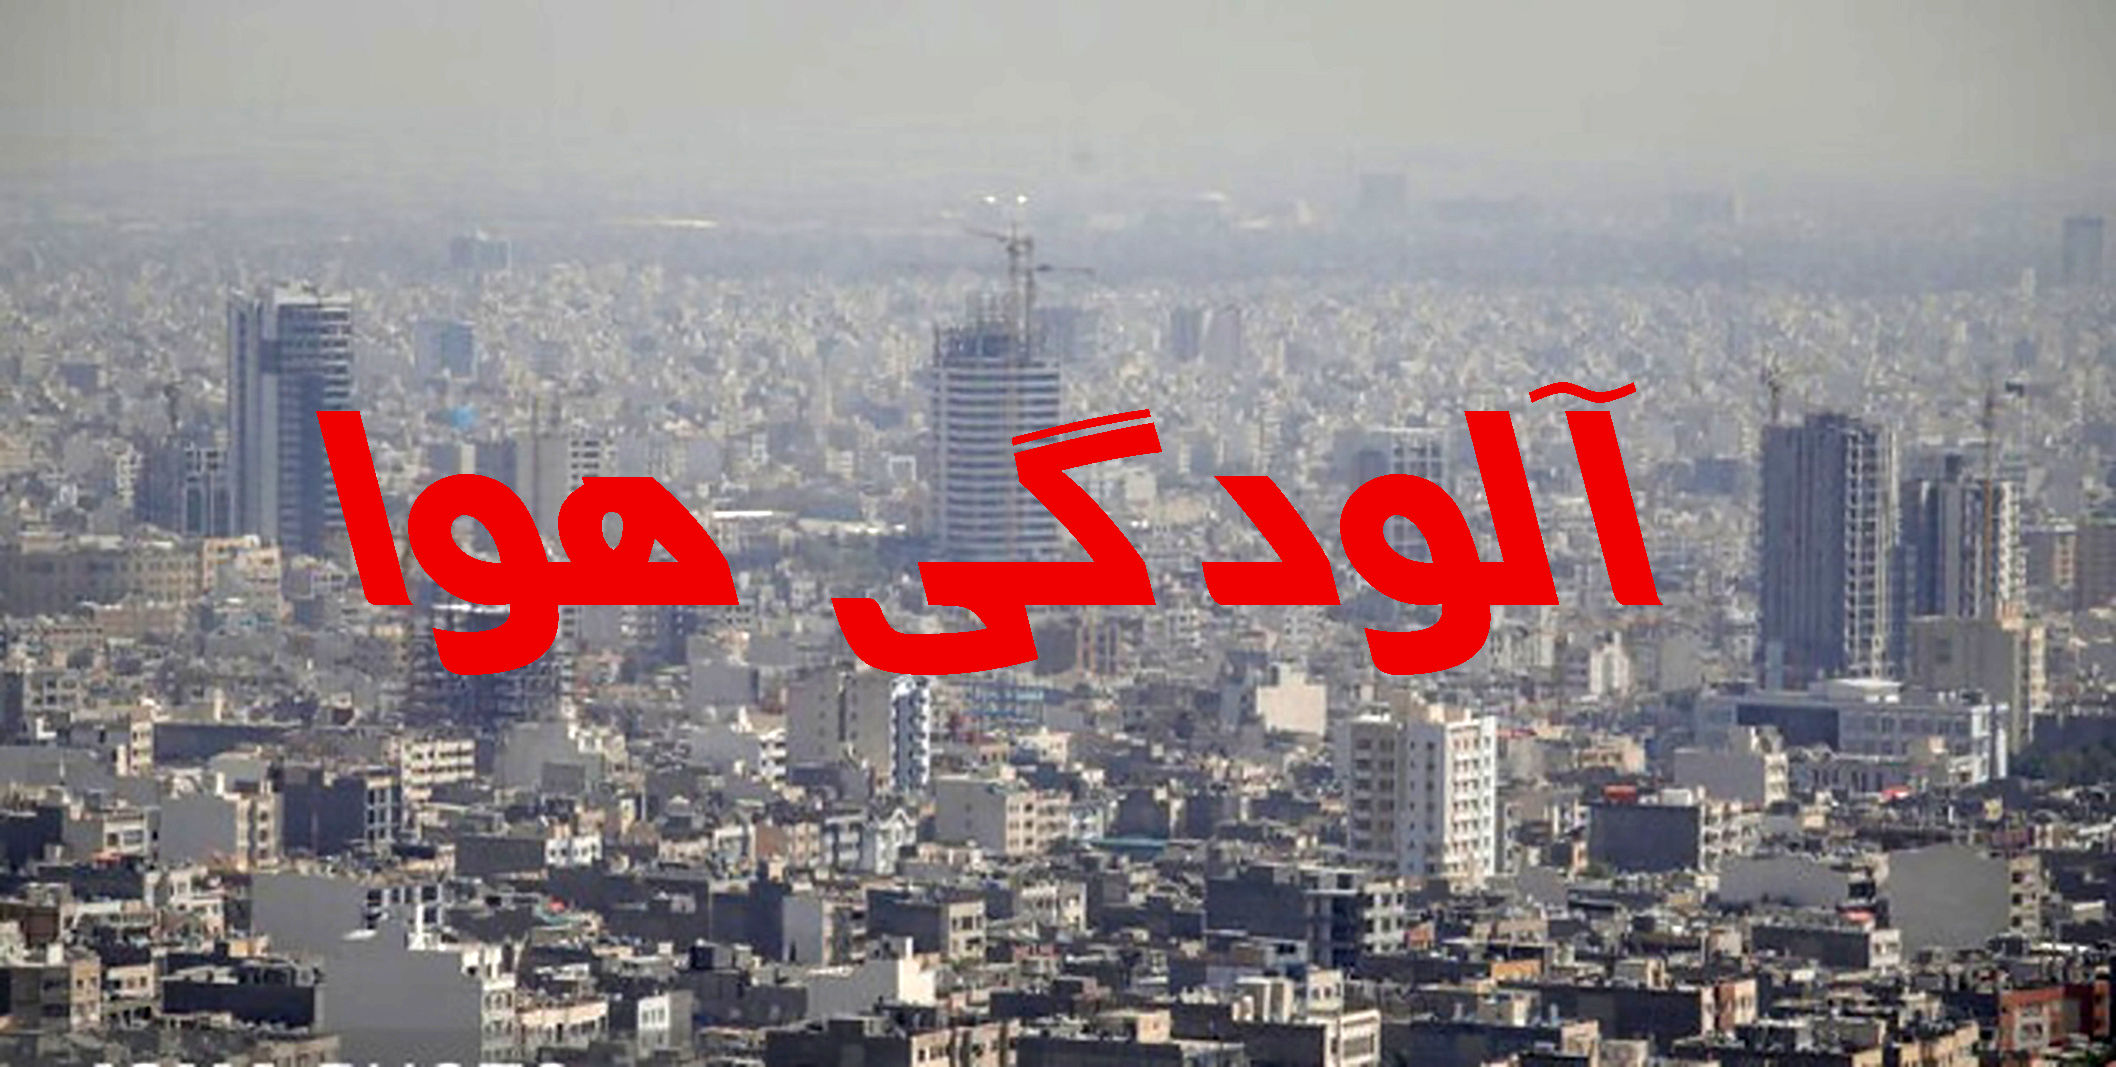 افزایش تعداد روزهای هوا با شاخص ناسالم در کلانشهر مشهد